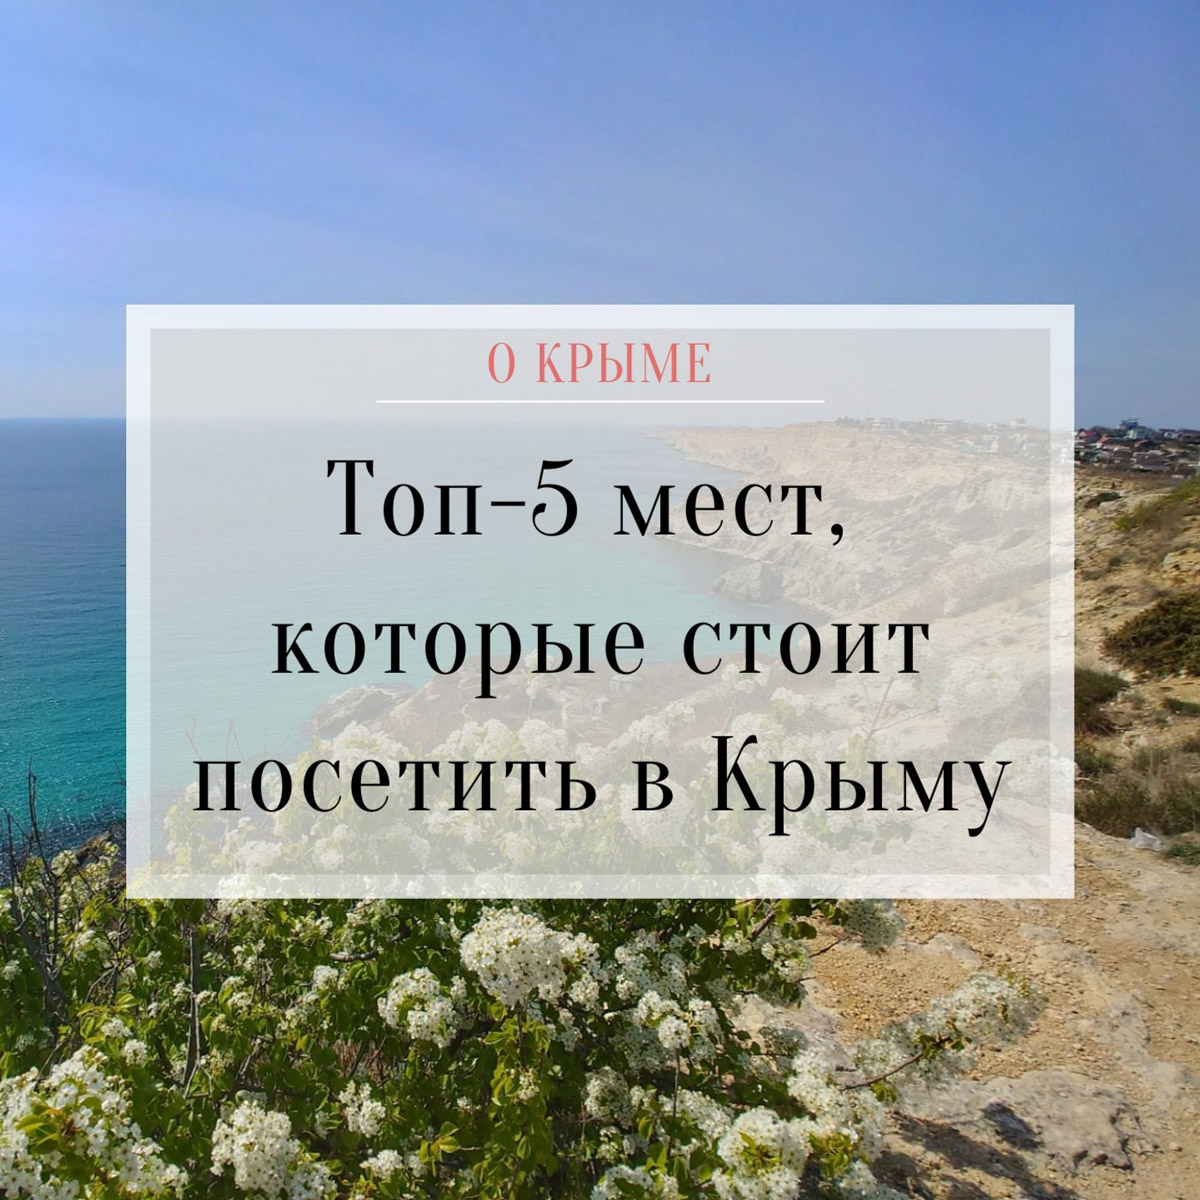 Топ-5 мест Крыма для посещения